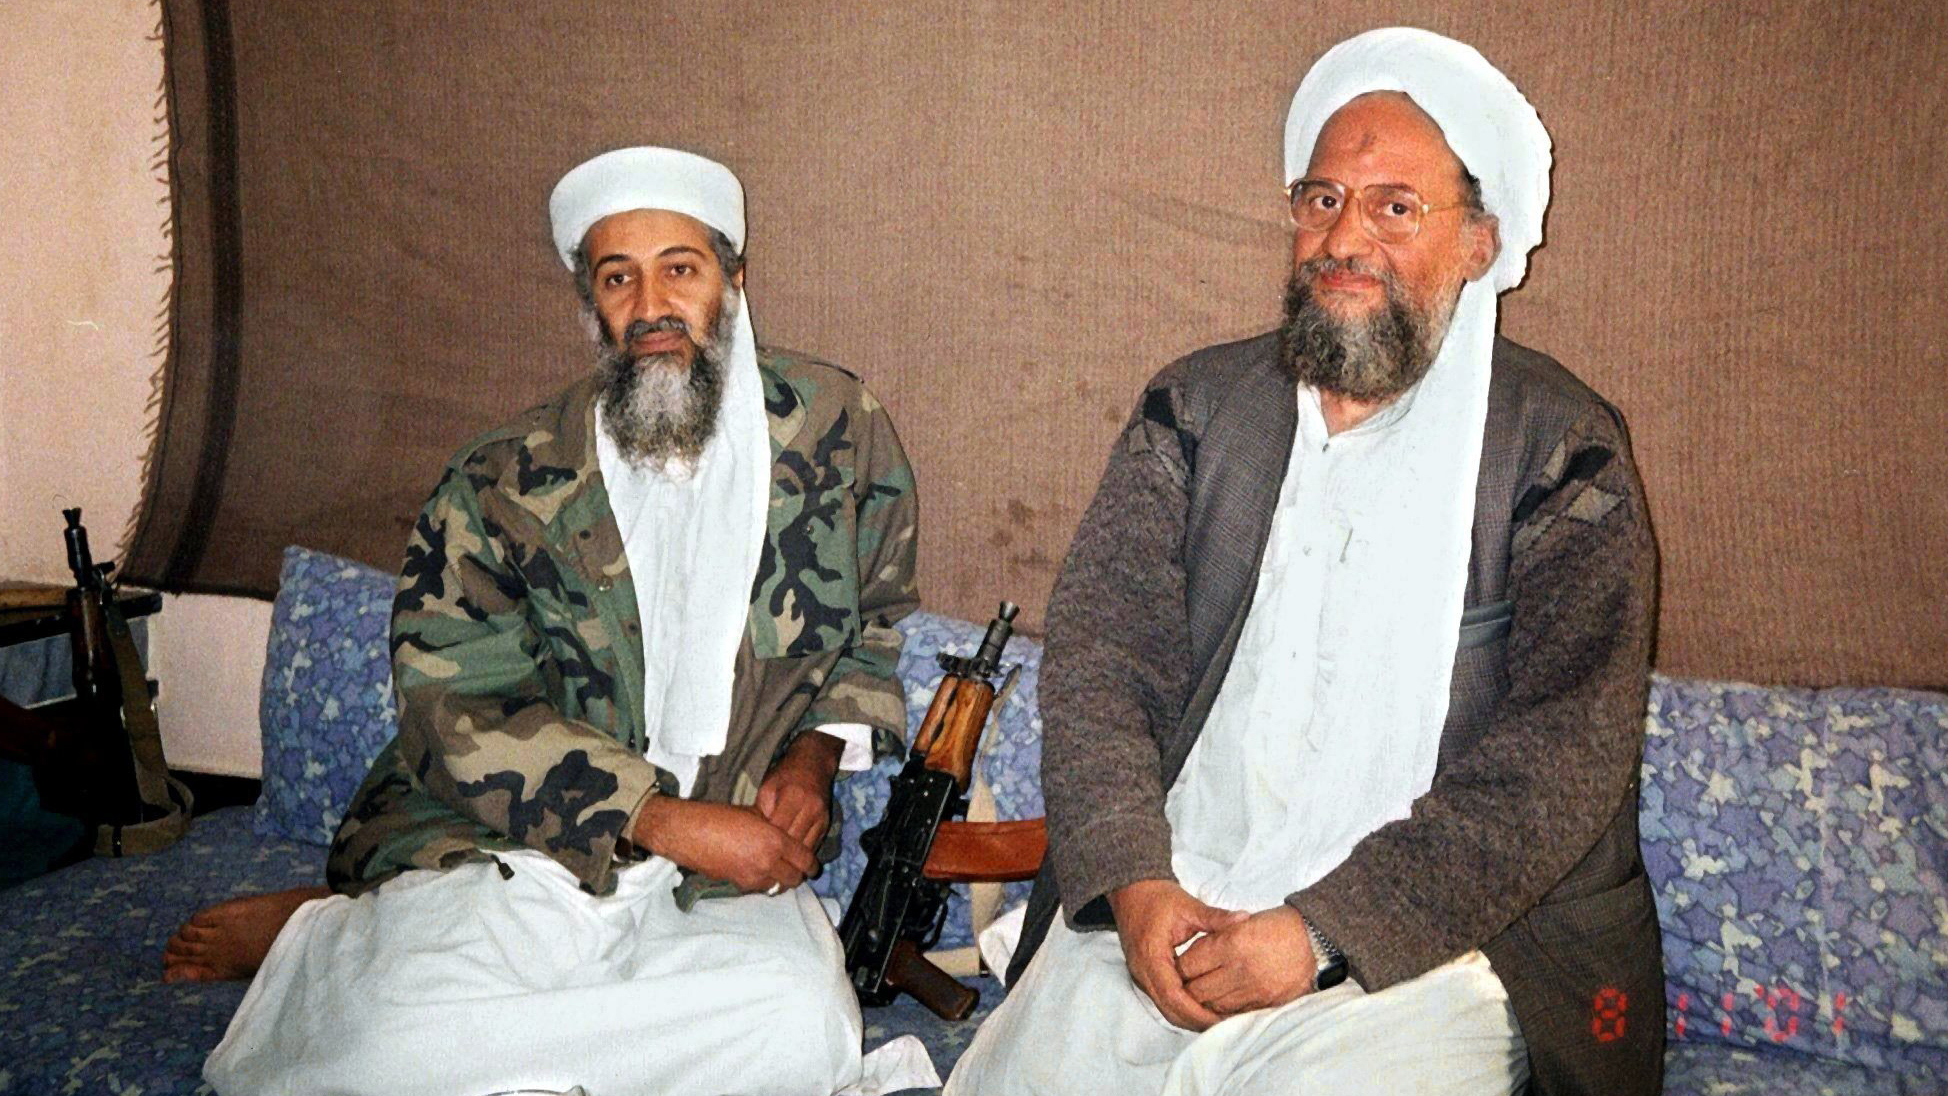 Al-Kaida-Chef bin Laden und sein Stellvertreter Sawahiri (rechts) gemeinsam an einem unbekannten Ort in Afghanistan. Aufgenommen am 08.11.2001. | dpa